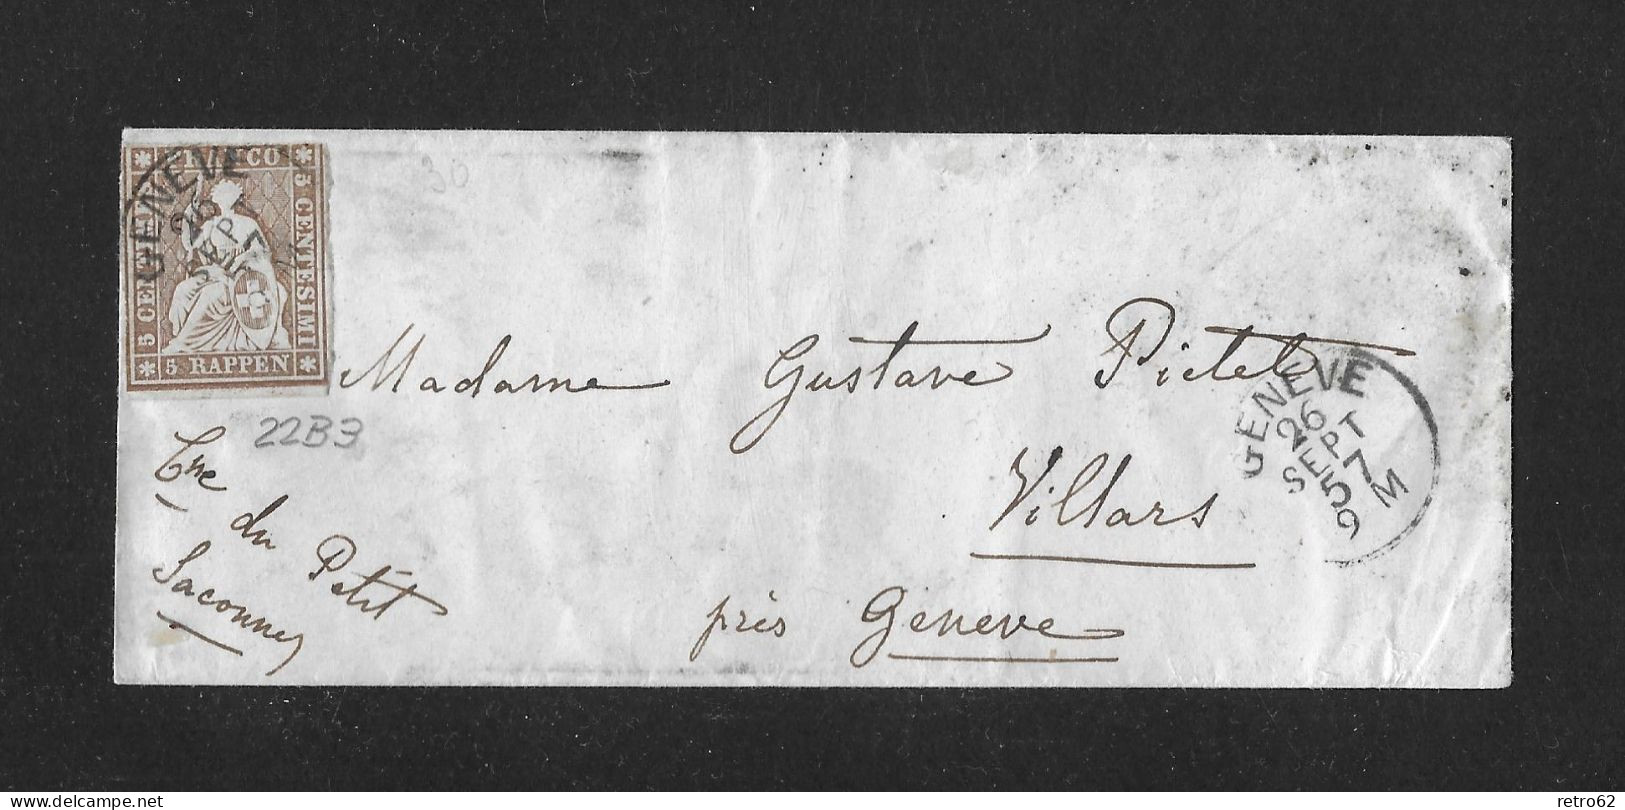 1857 HEIMAT GENÈVE ► Briefumschlag Von Genève Nach Villars    ►SBK-22B3 Grnève 26 SEPT 57 Guter Schnitt◄ - Storia Postale